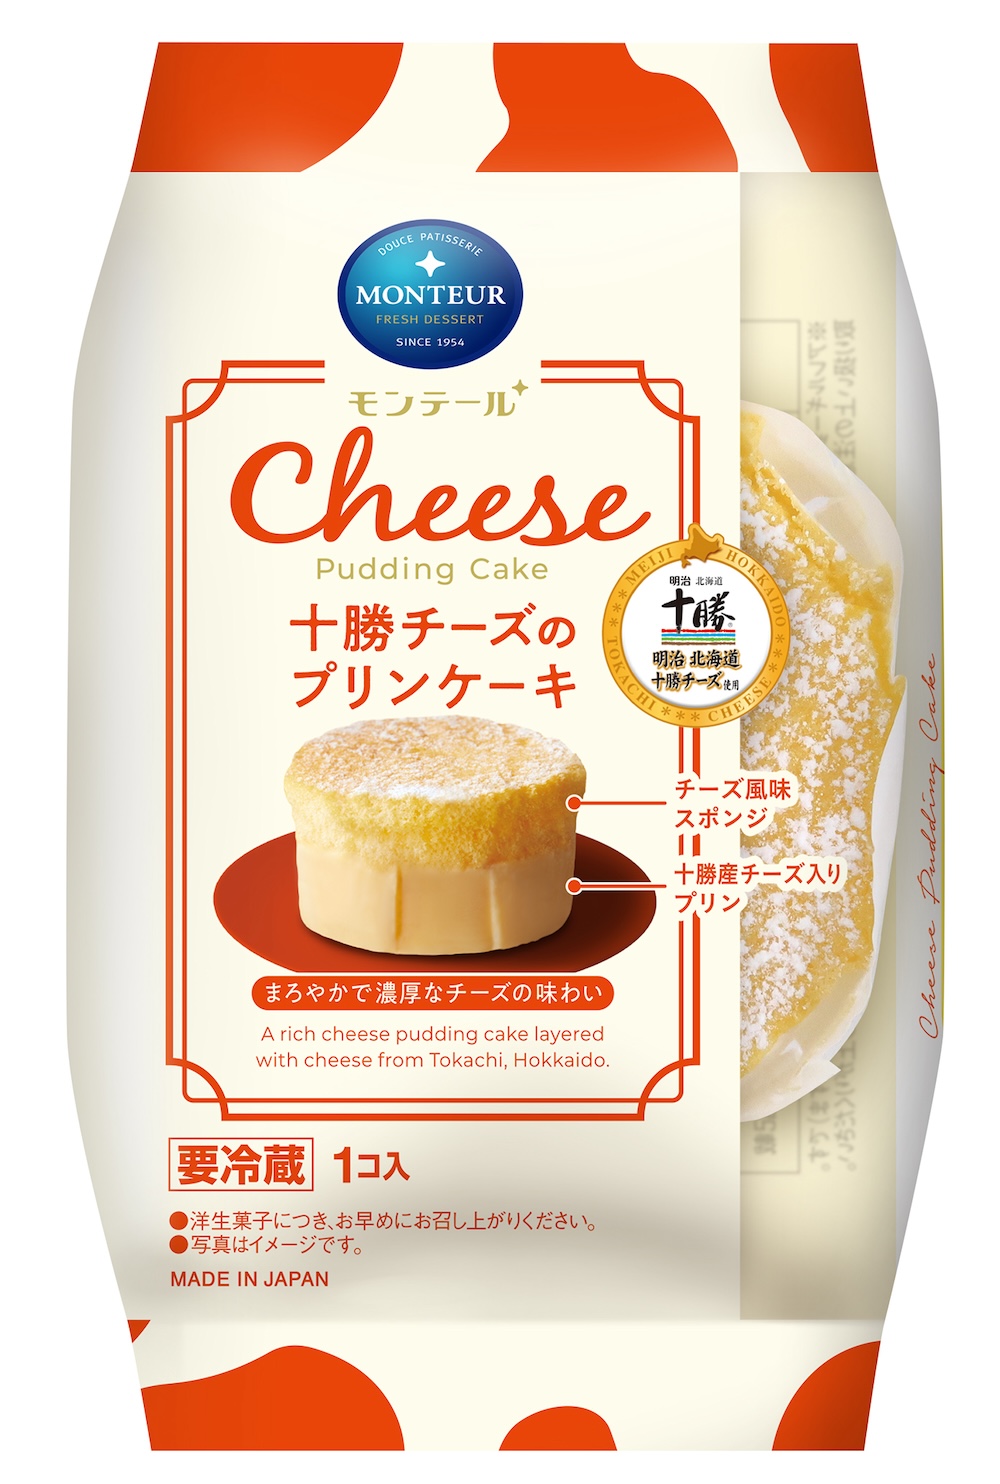 「十勝チーズのプリンケーキ」パッケージイメージ